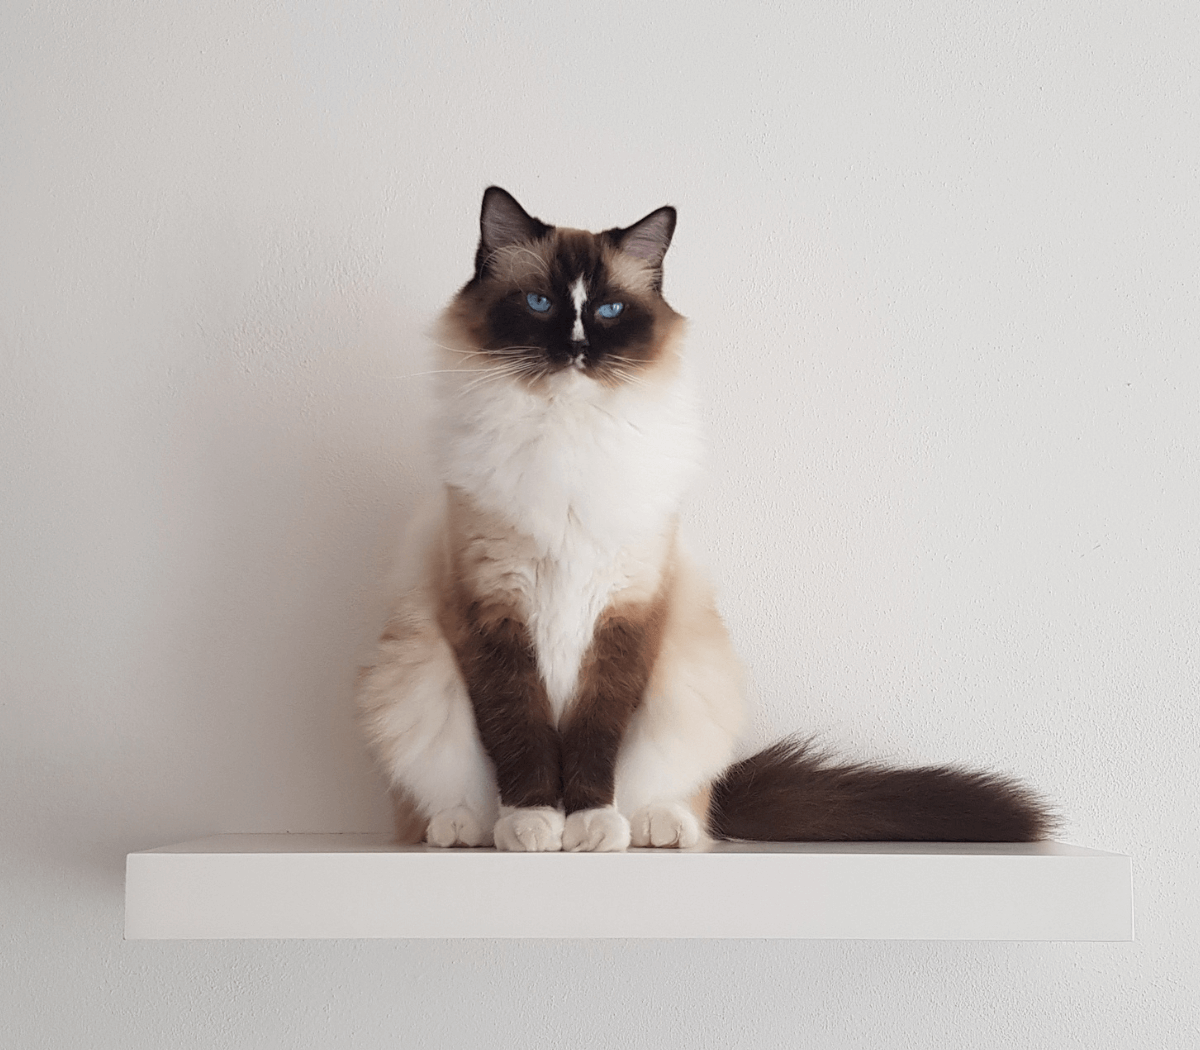 A cute kitten looking straight